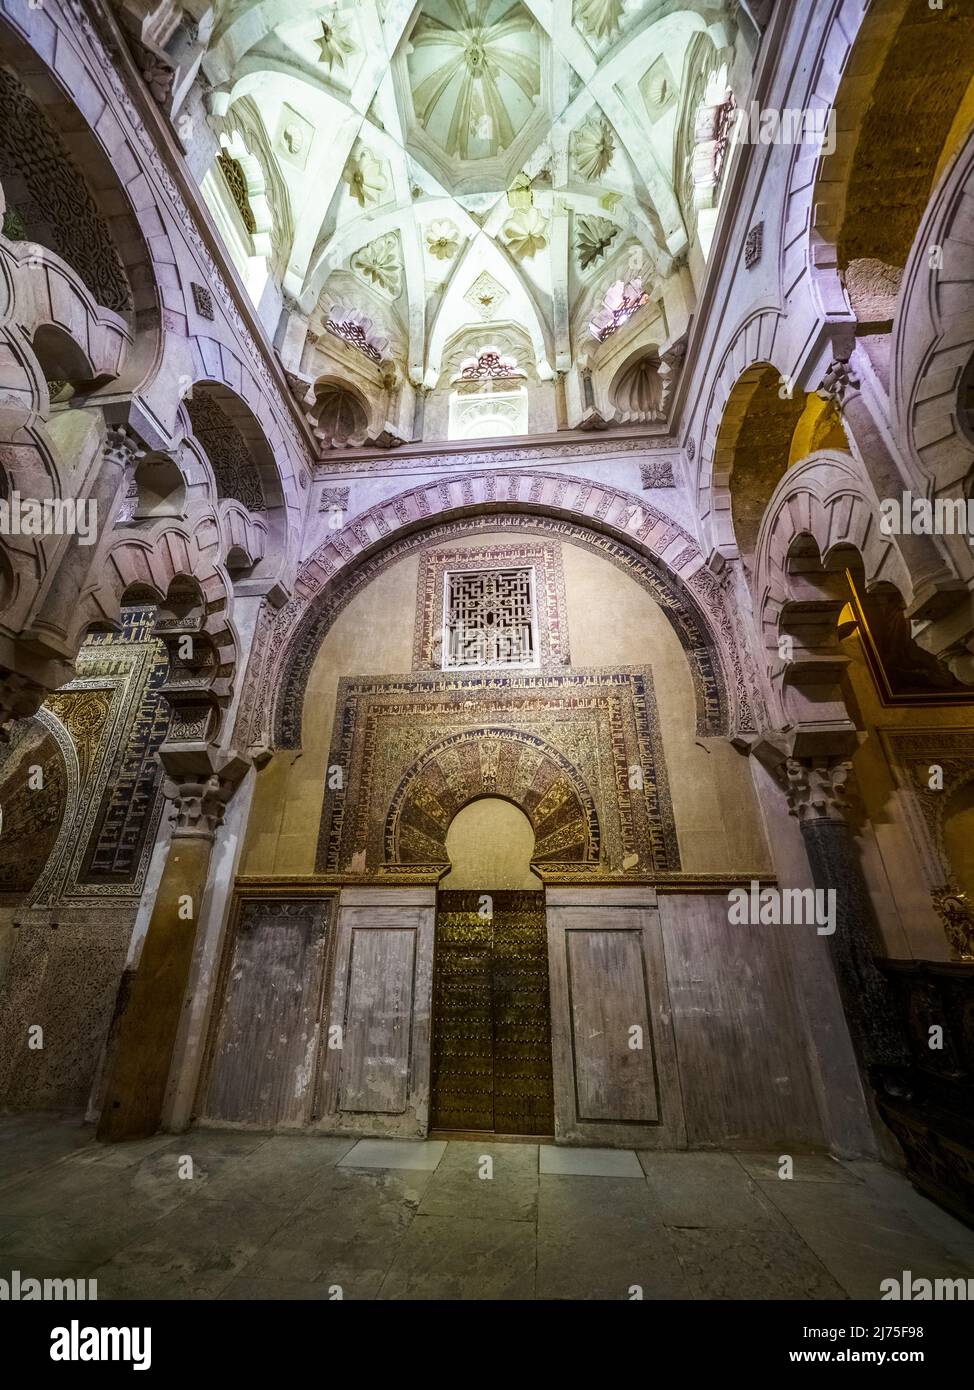 Westliche Tür im Maqsura-Bereich (rechts vom Mihrab), die zu dem Durchgang führte, der mit dem Palast des Kalifen verbunden ist - Mezquita-Catedral (große Moschee von Cordoba) - Cordoba, Spanien Stockfoto